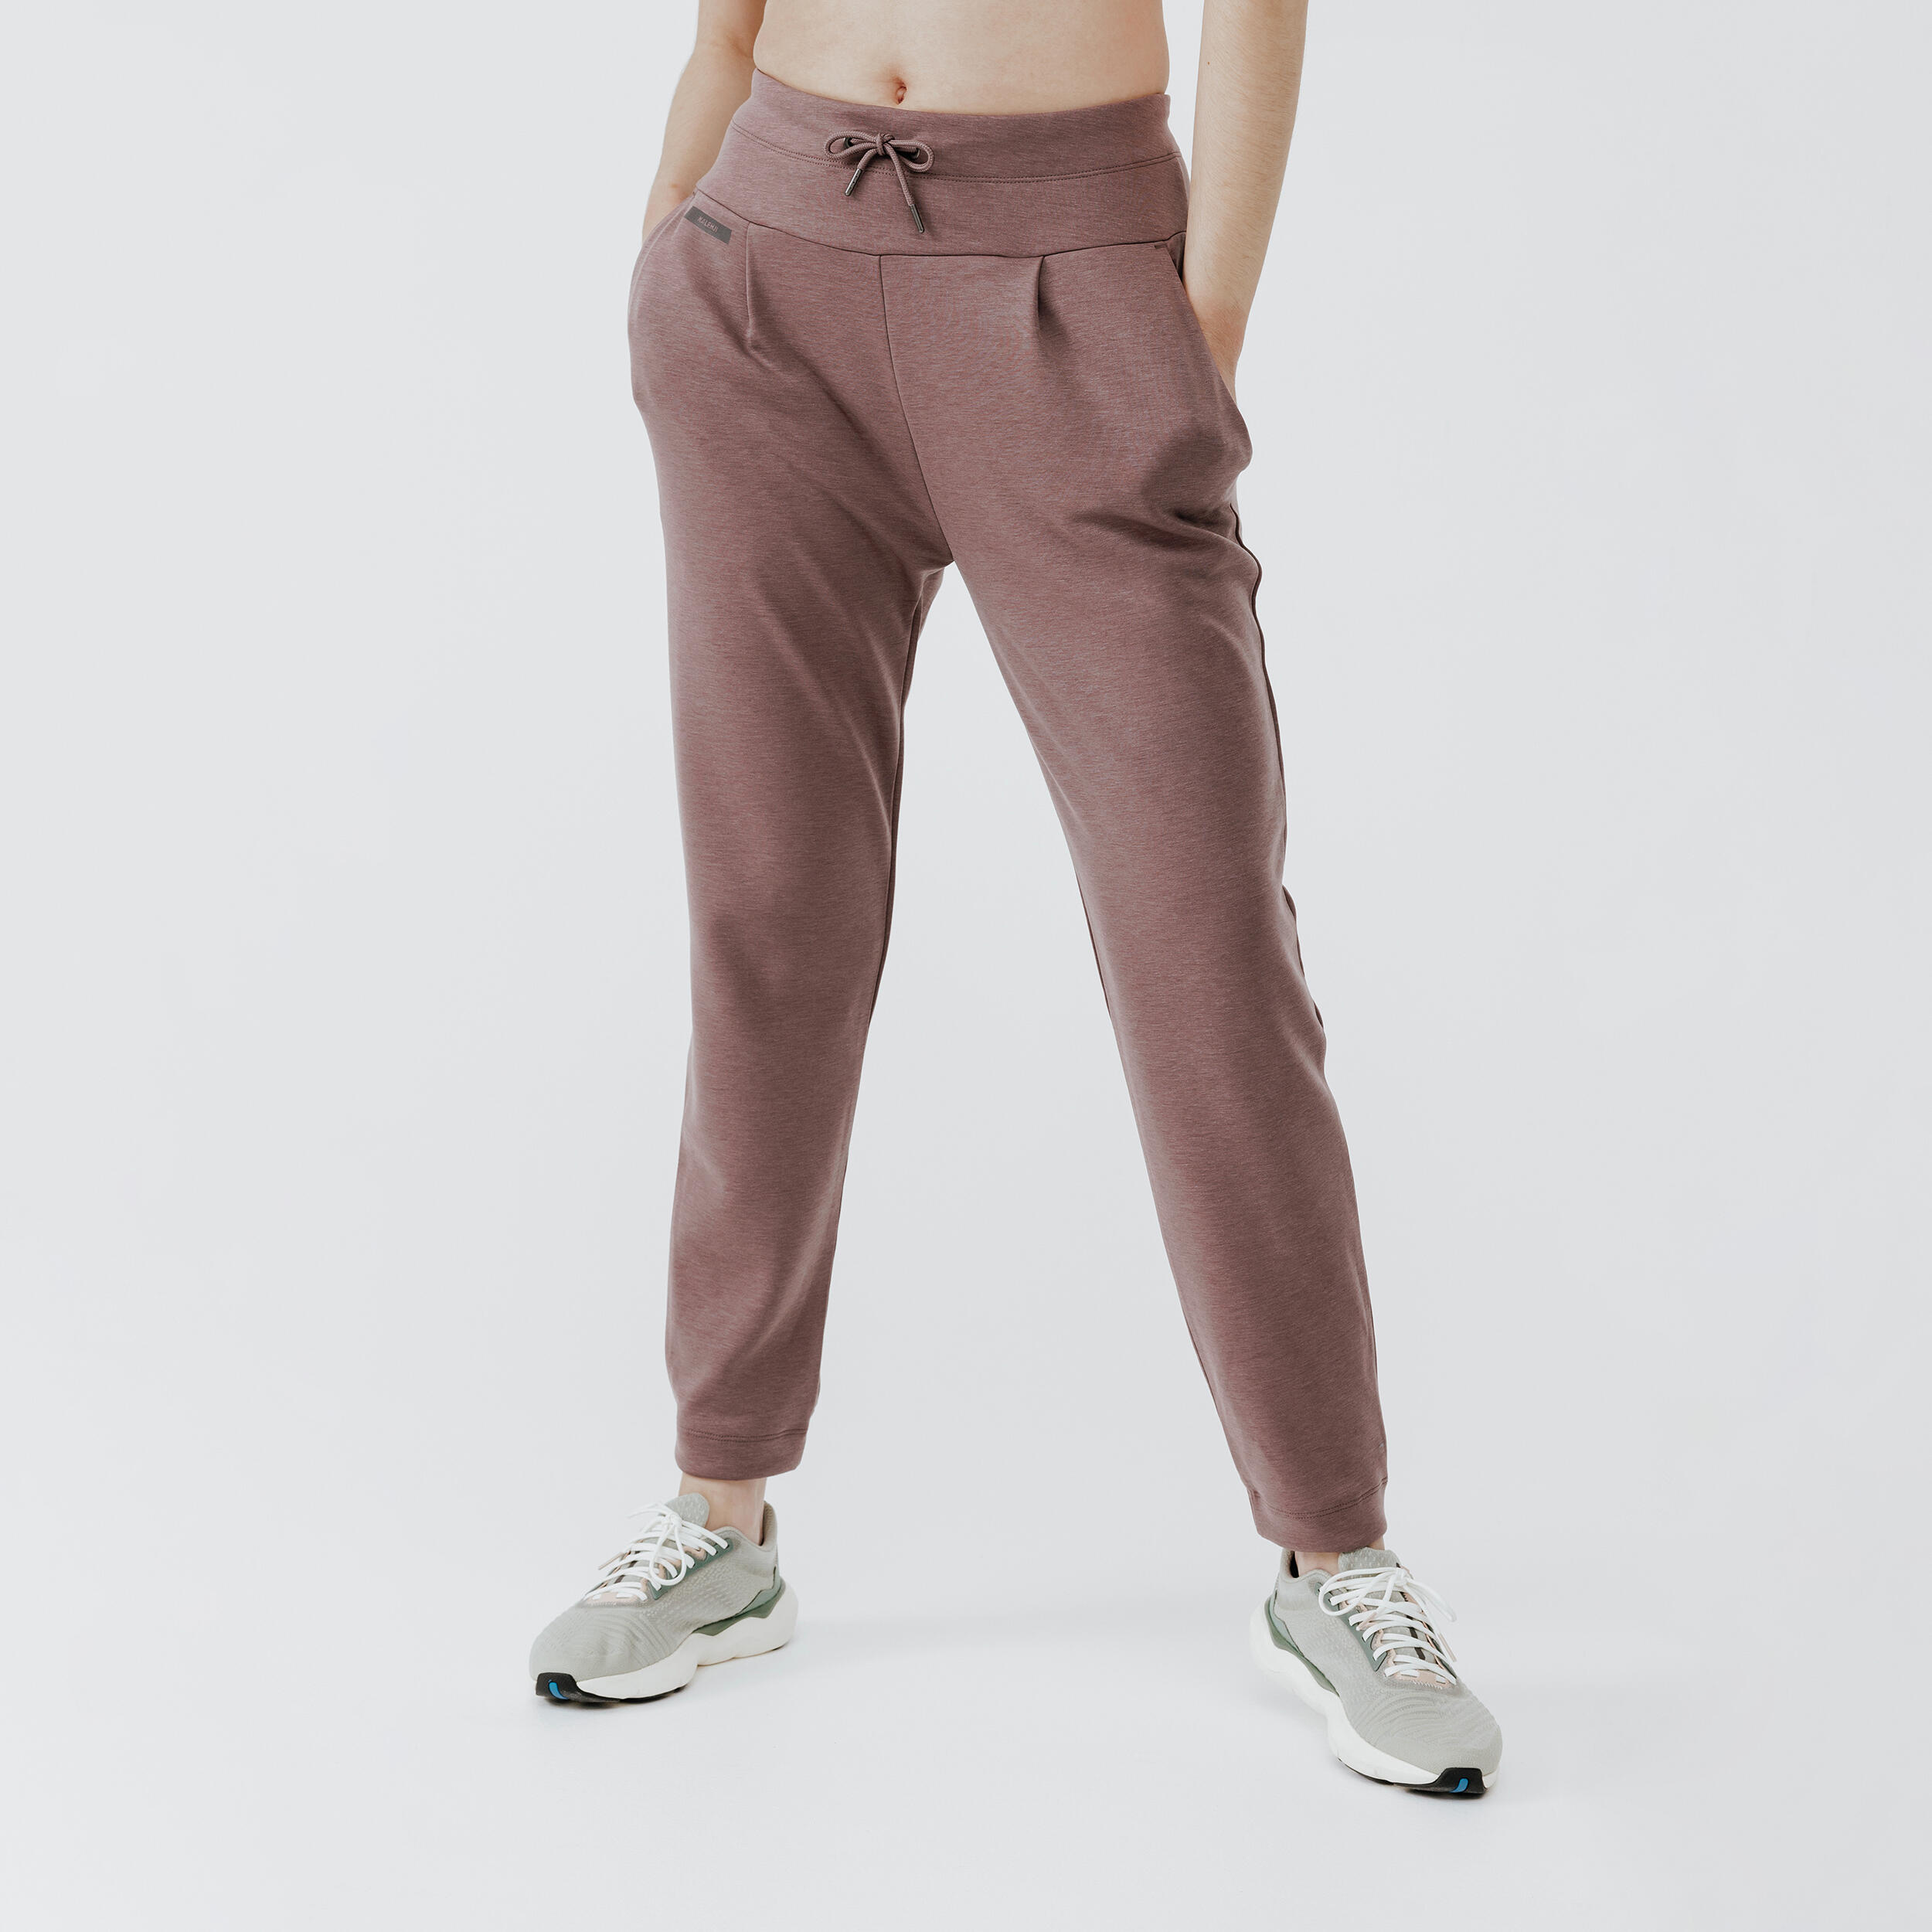 pantalon de running chaud femme - jogging 500 violet - kalenji